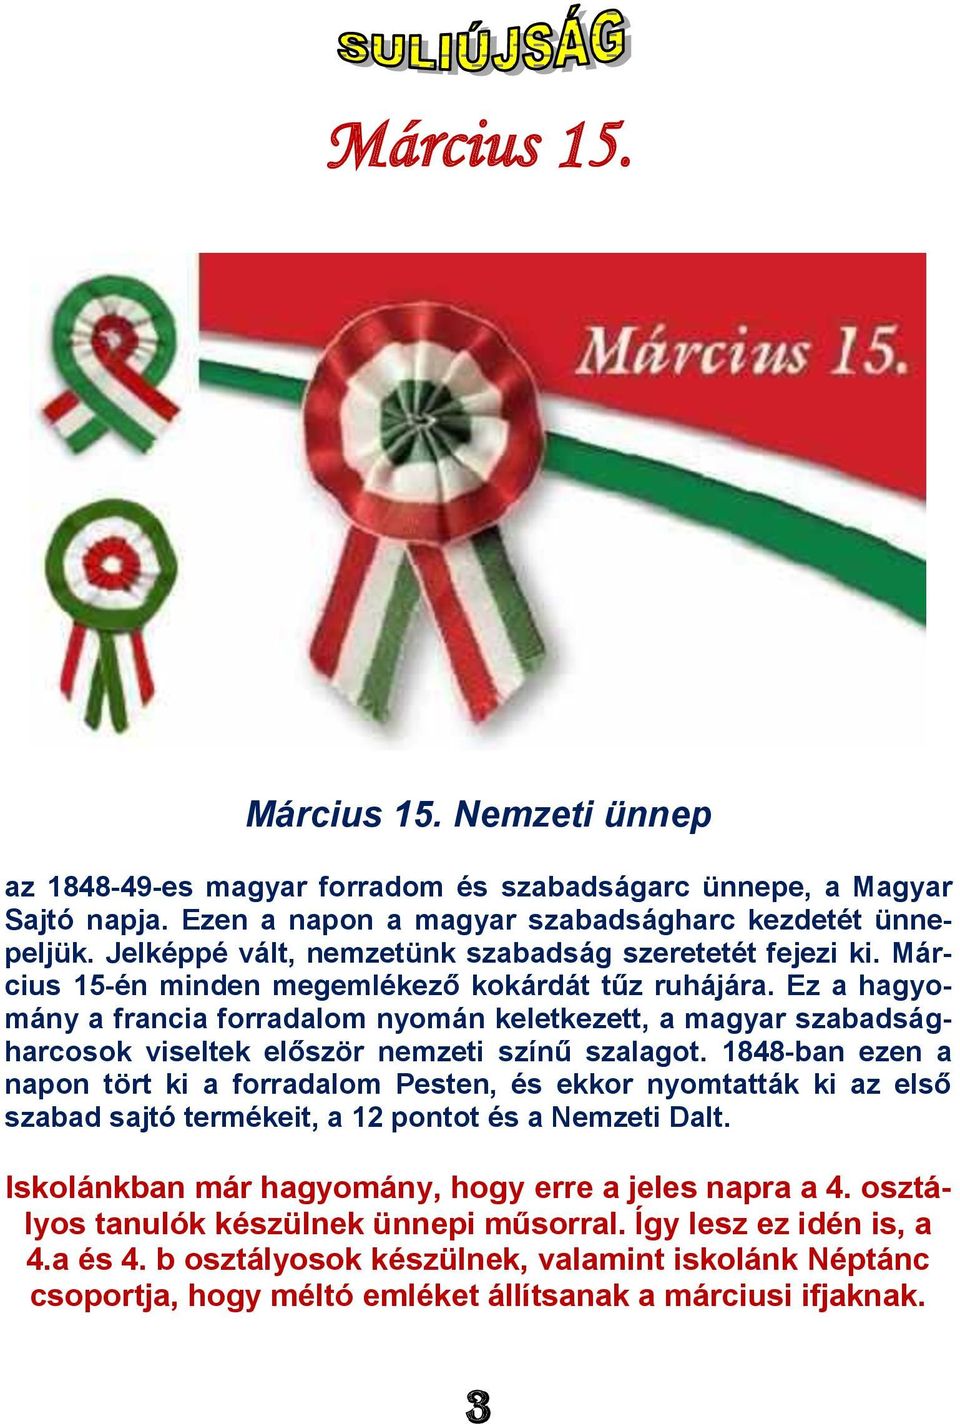 Ez a hagyomány a francia forradalom nyomán keletkezett, a magyar szabadságharcosok viseltek először nemzeti színű szalagot.